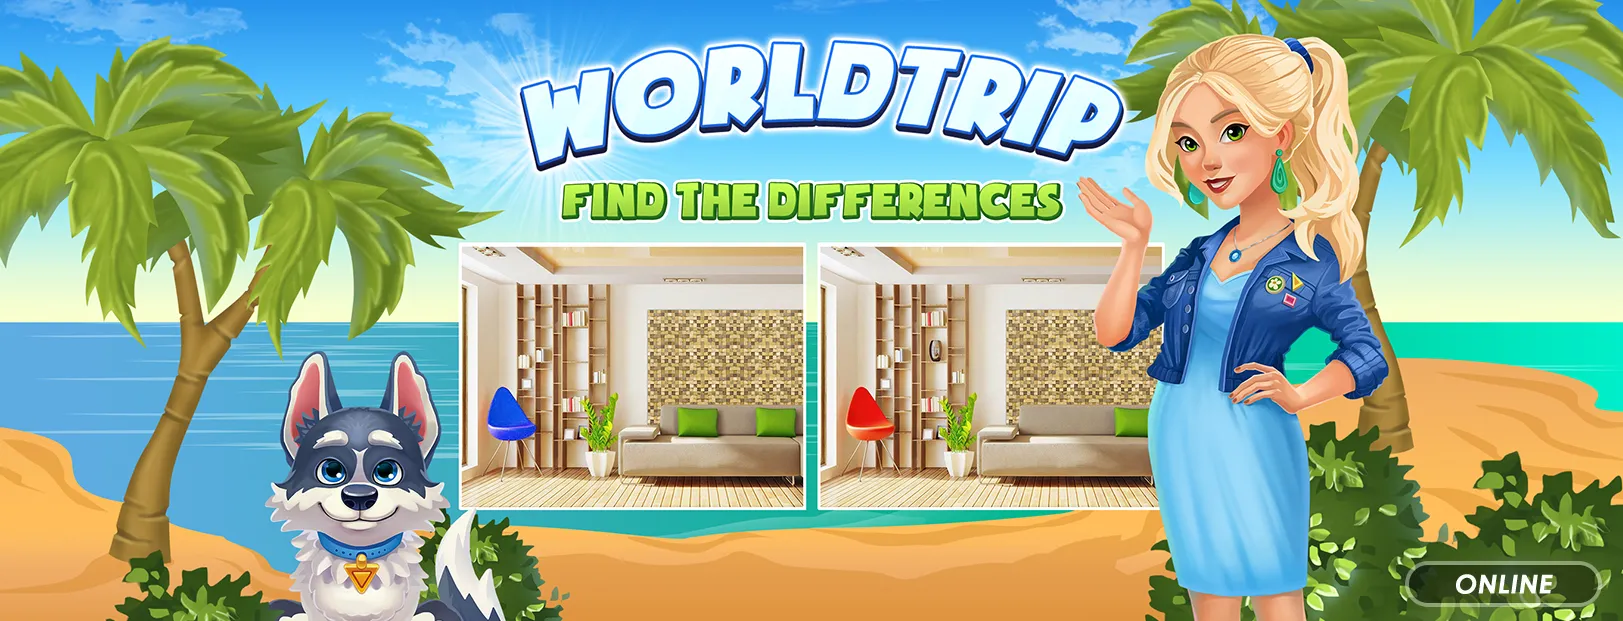 Worldtrip: Find differences